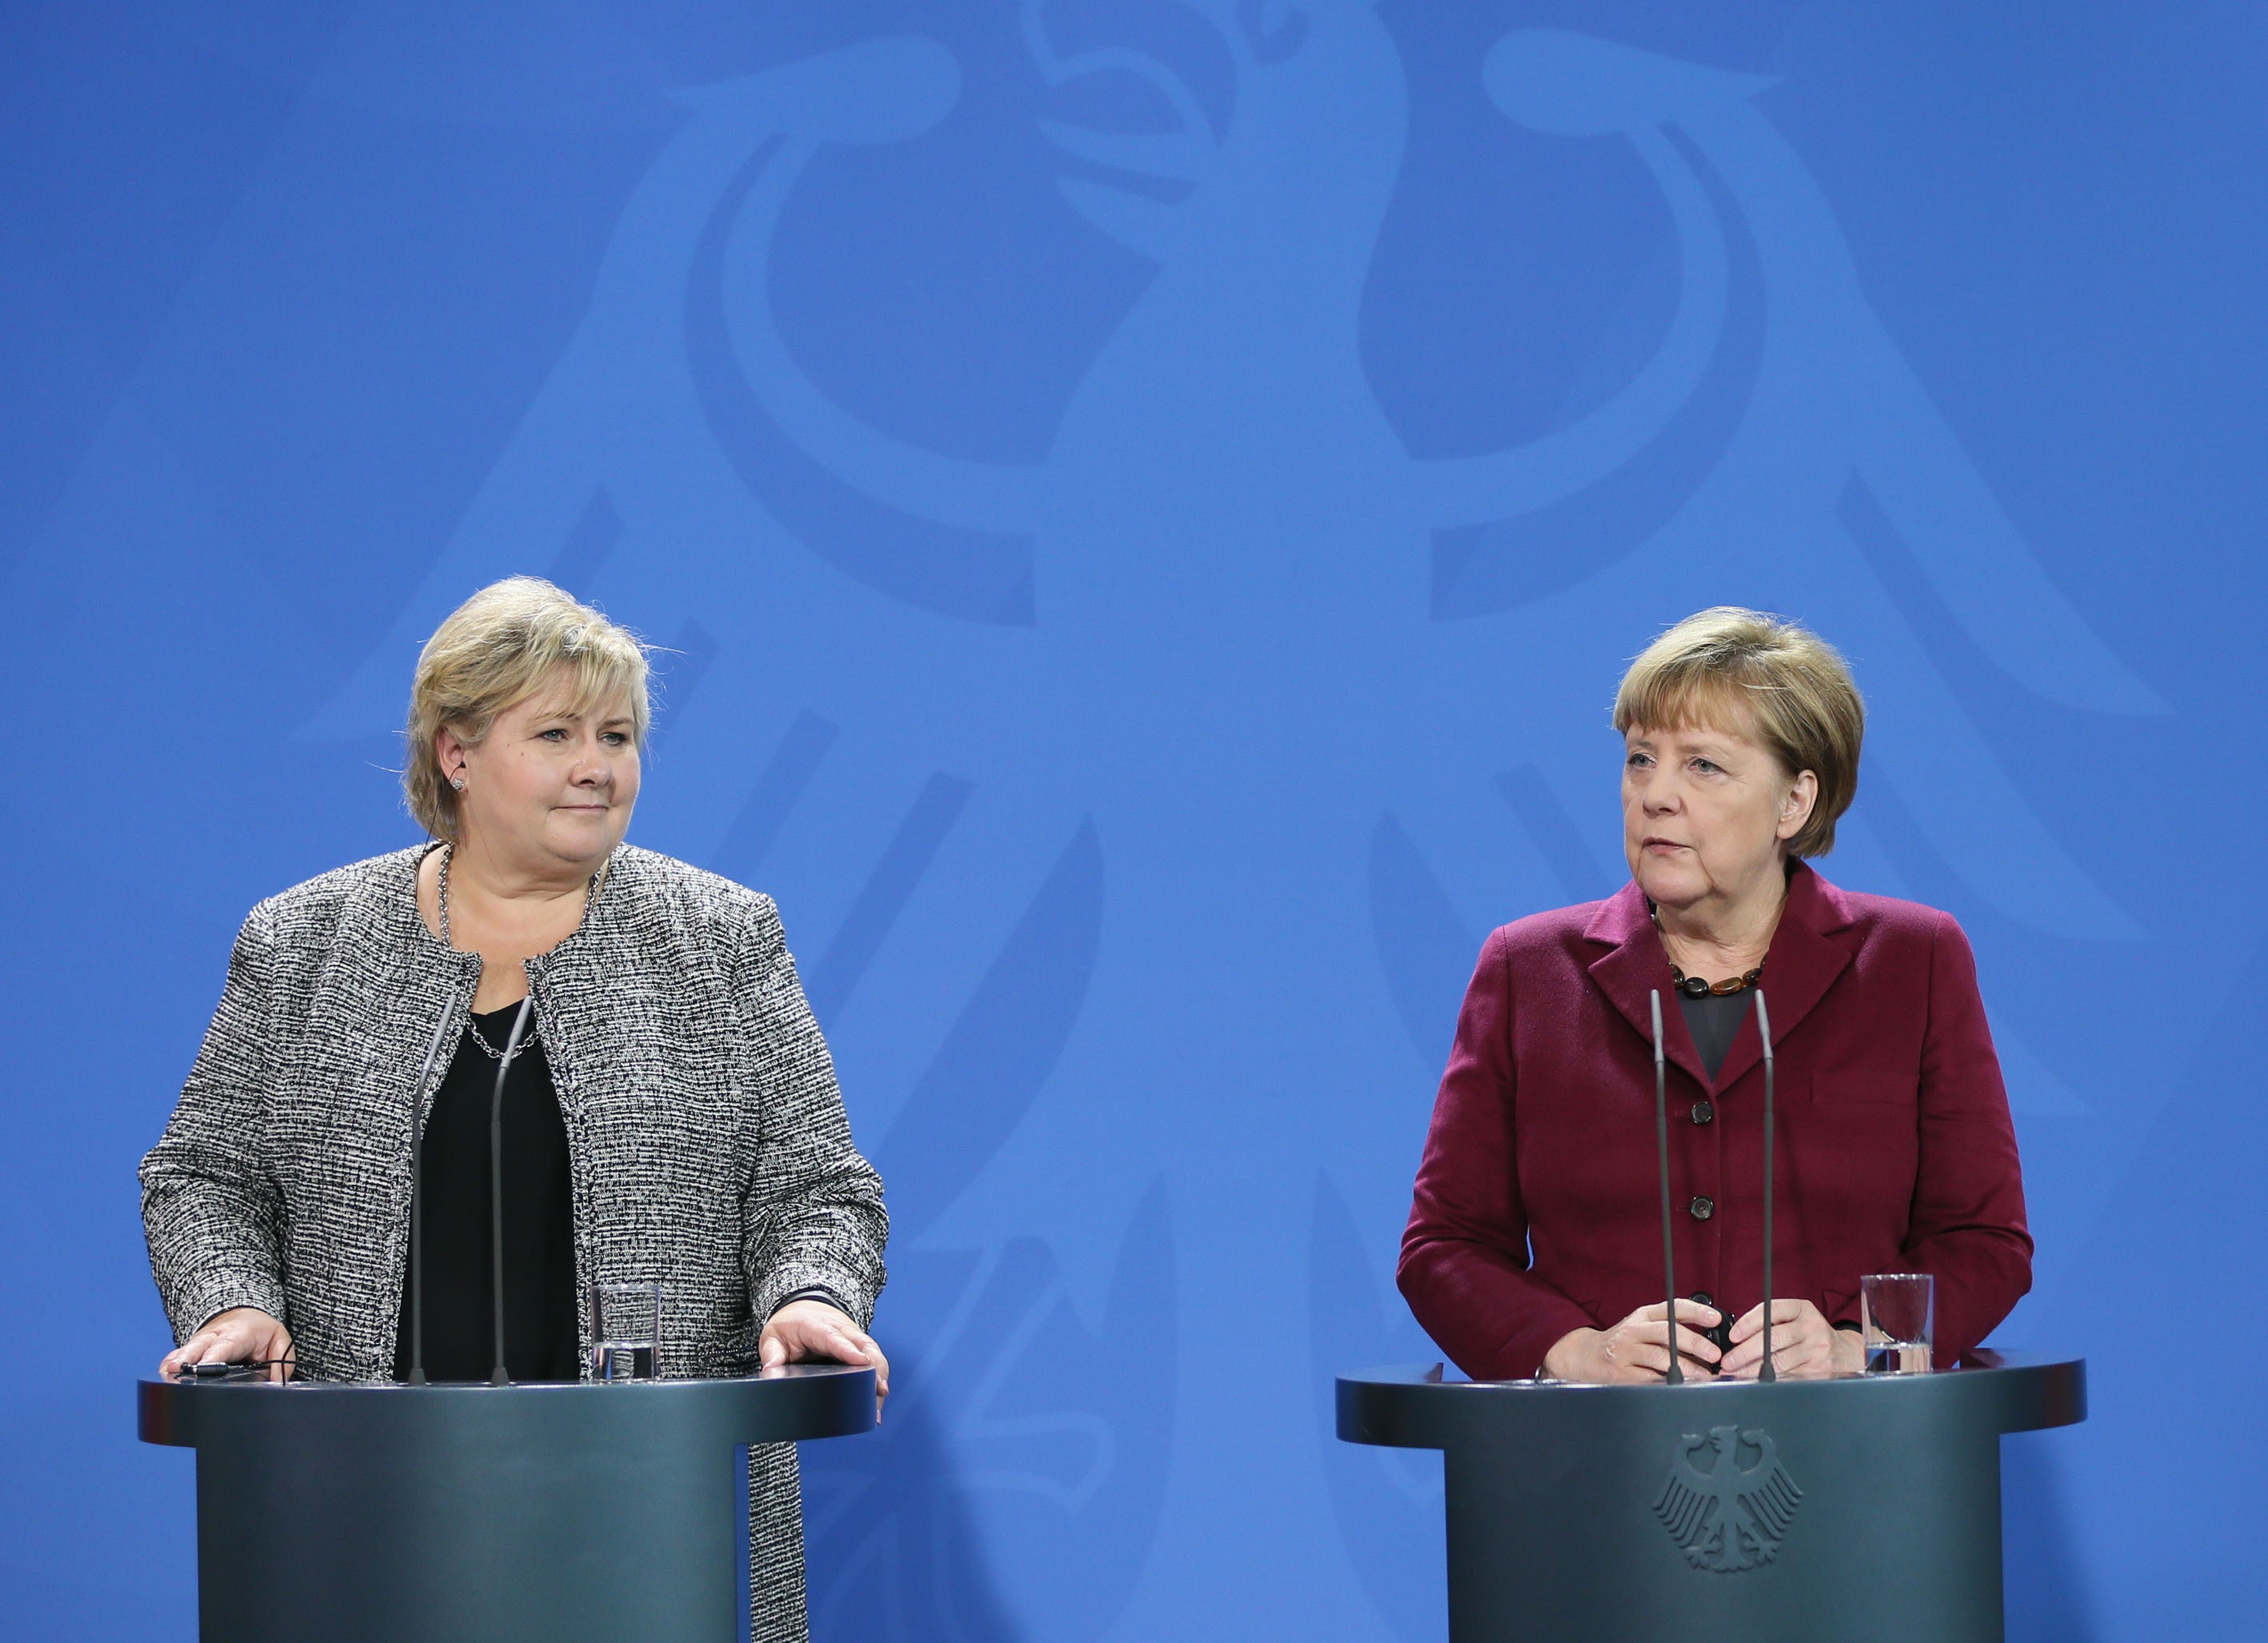 Erna Solberg és Angela Merkel (Cuneyt Karadag / ANADOLU AGENCY)